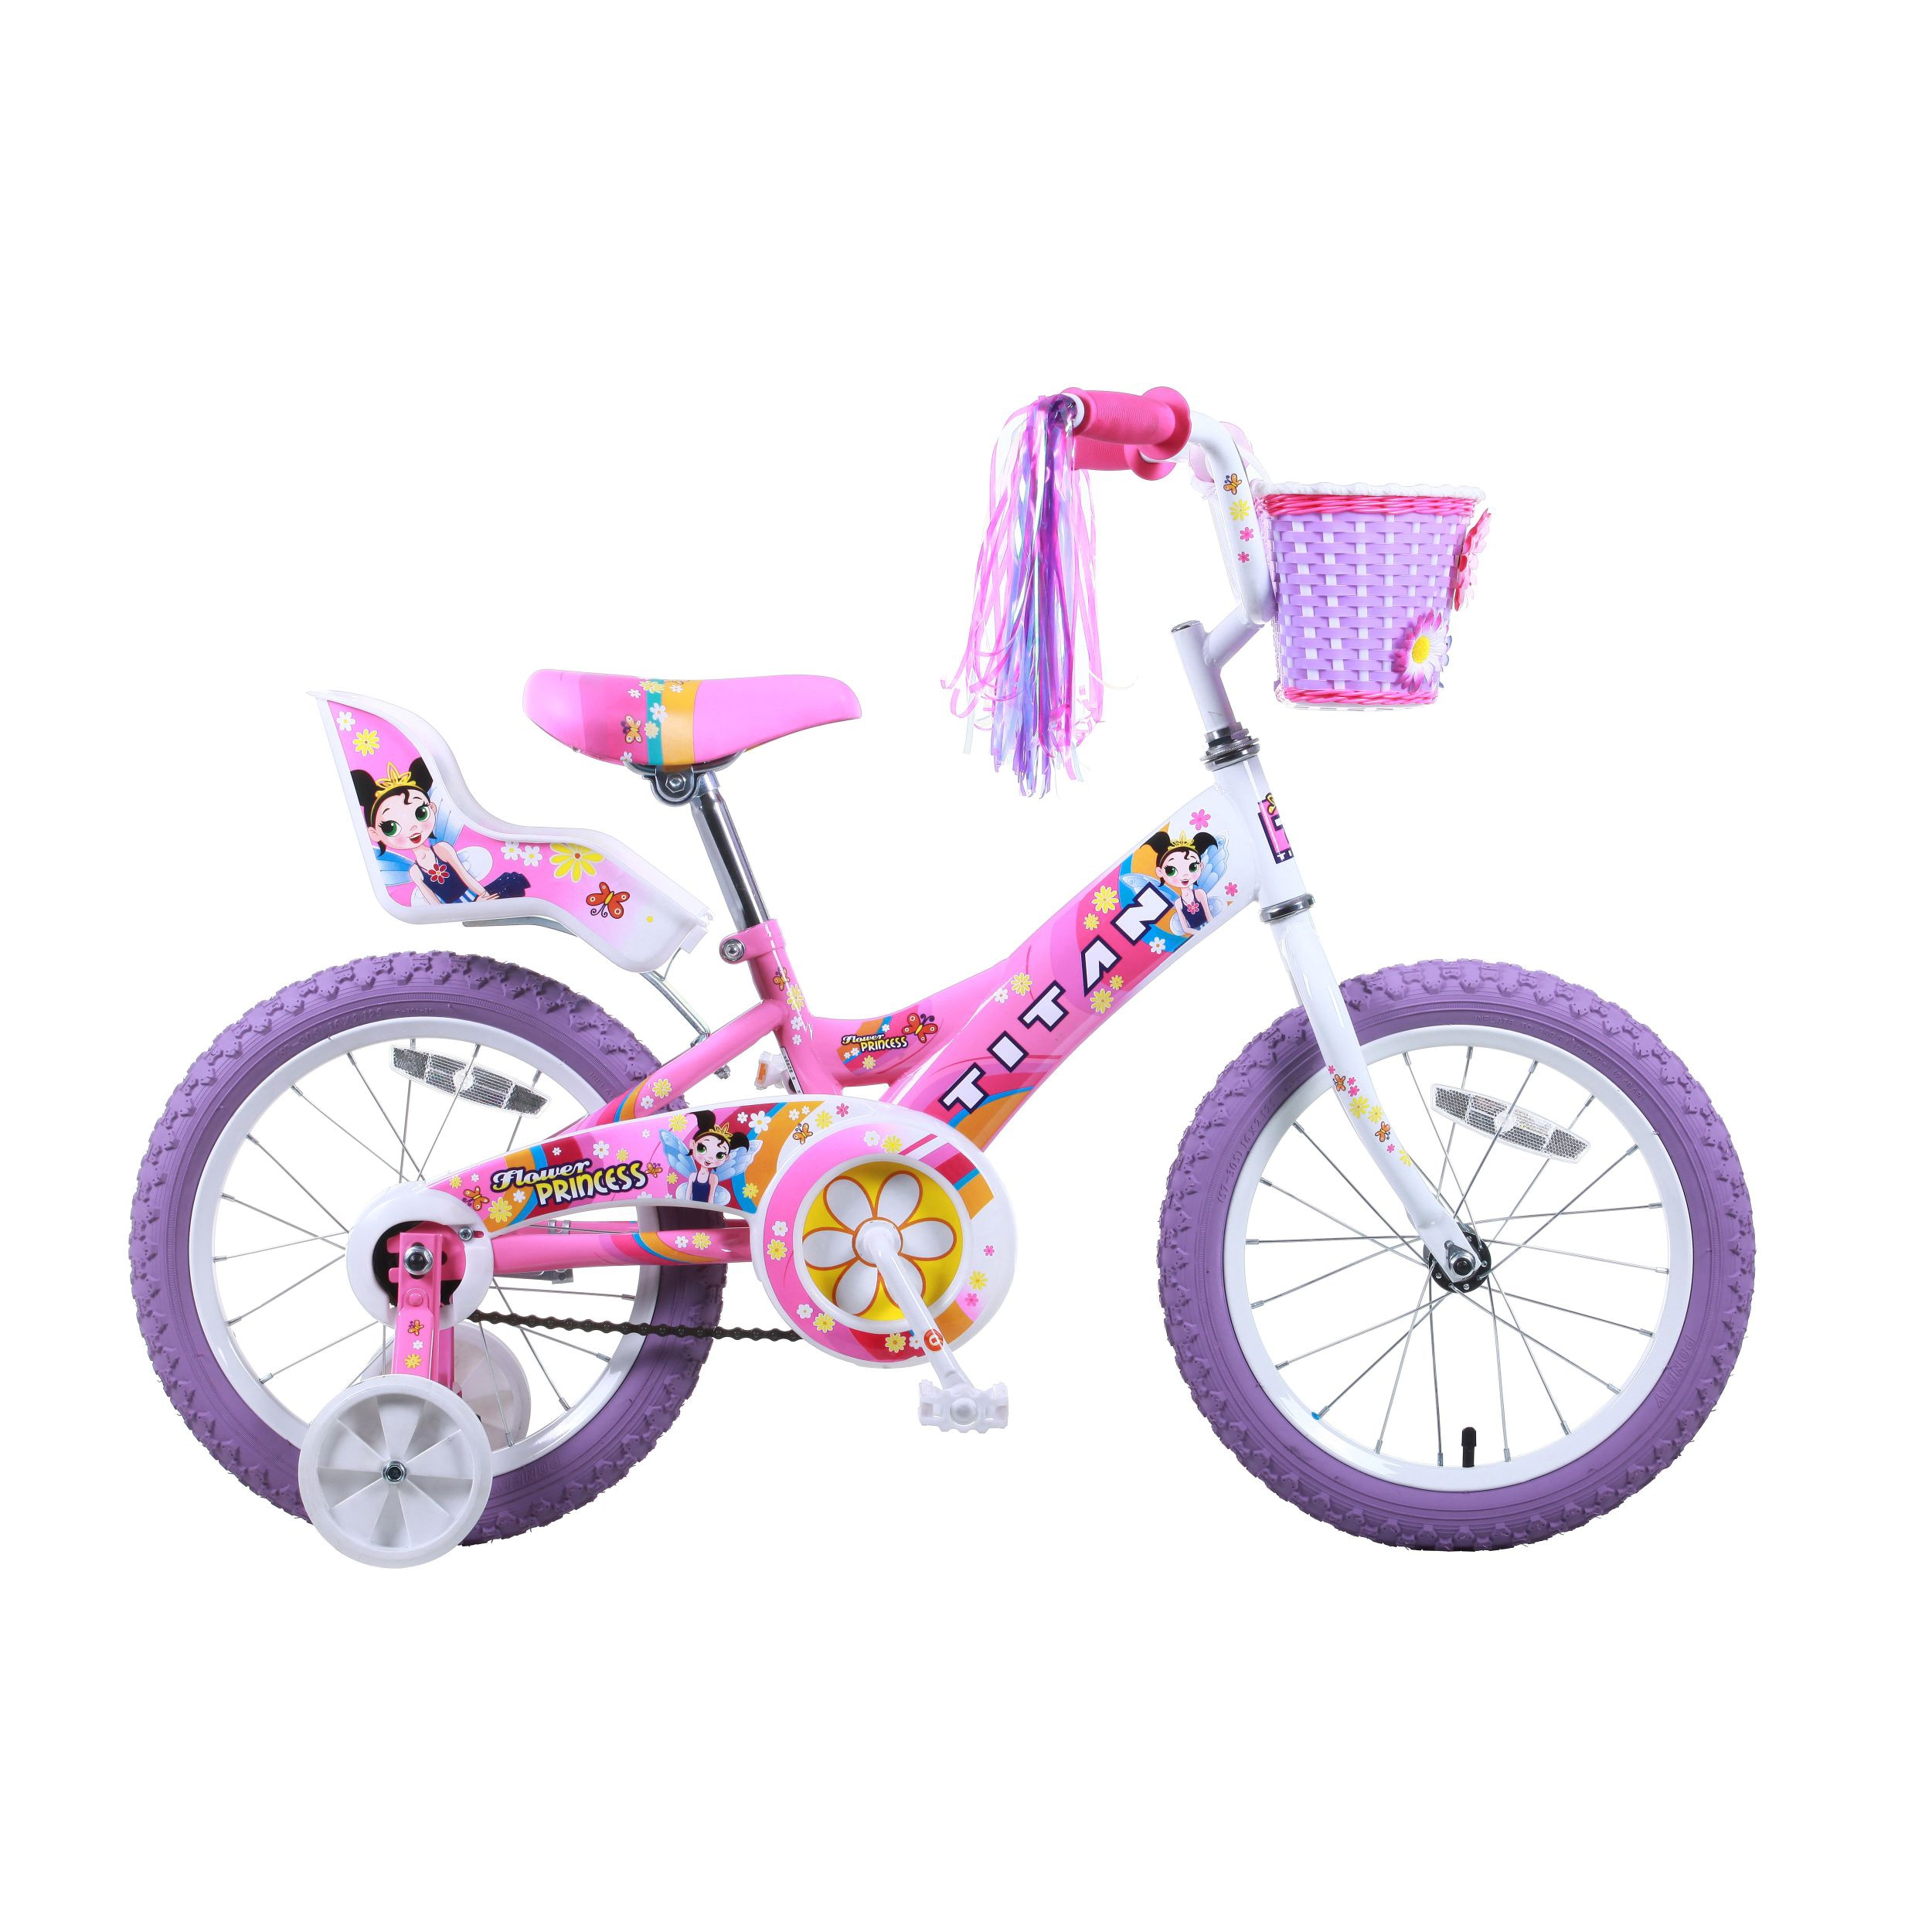 16 inch princess bike